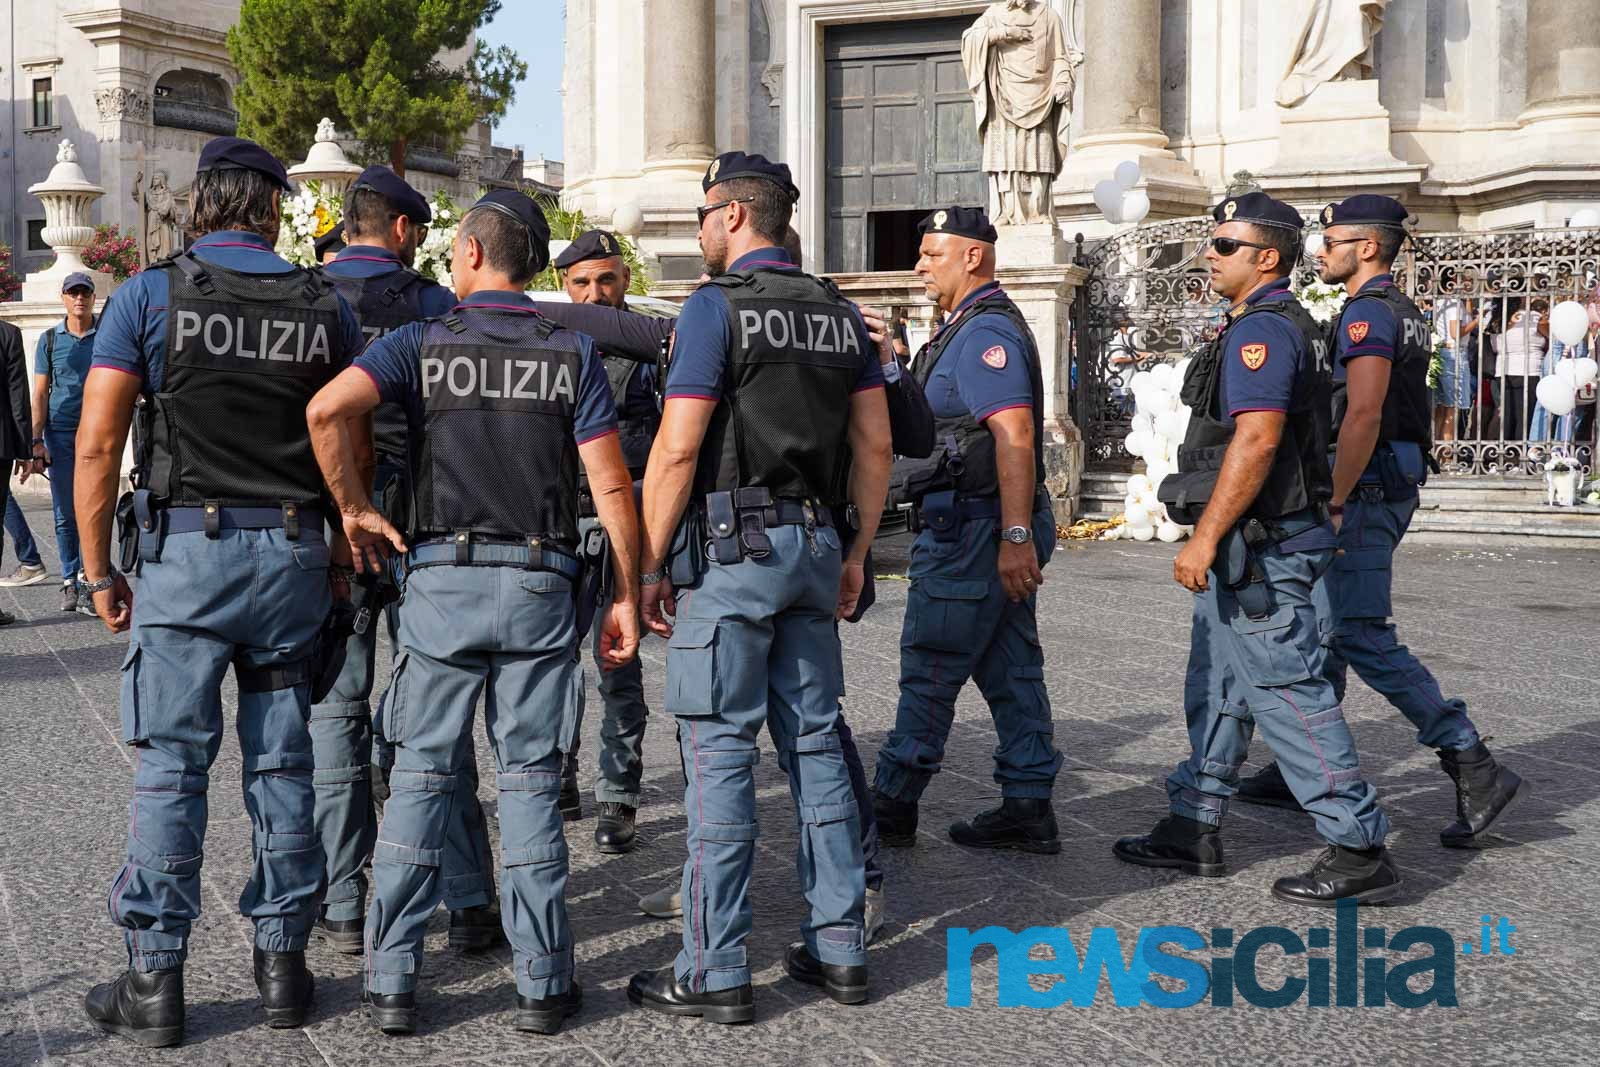 Catania, carenze di organico tra le forze dell’ordine. I sindacati: “La città ha bisogno di legalità”